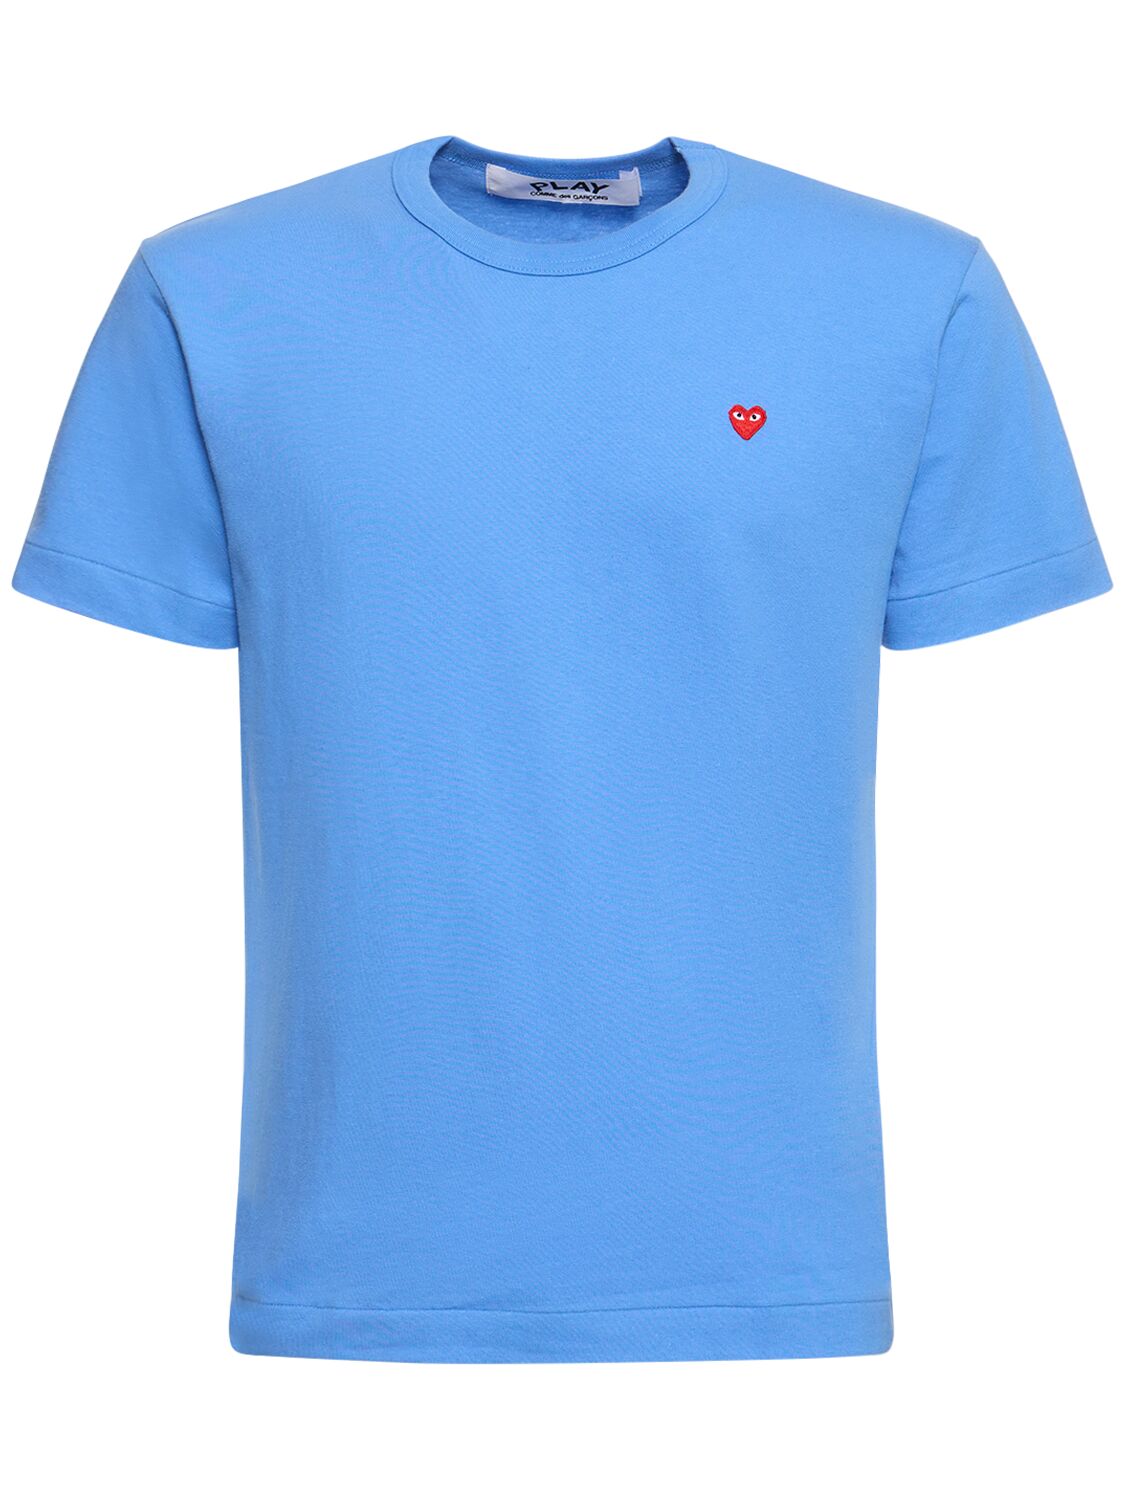 Play Logo Cotton T-shirt – MEN > CLOTHING > T-SHIRTS